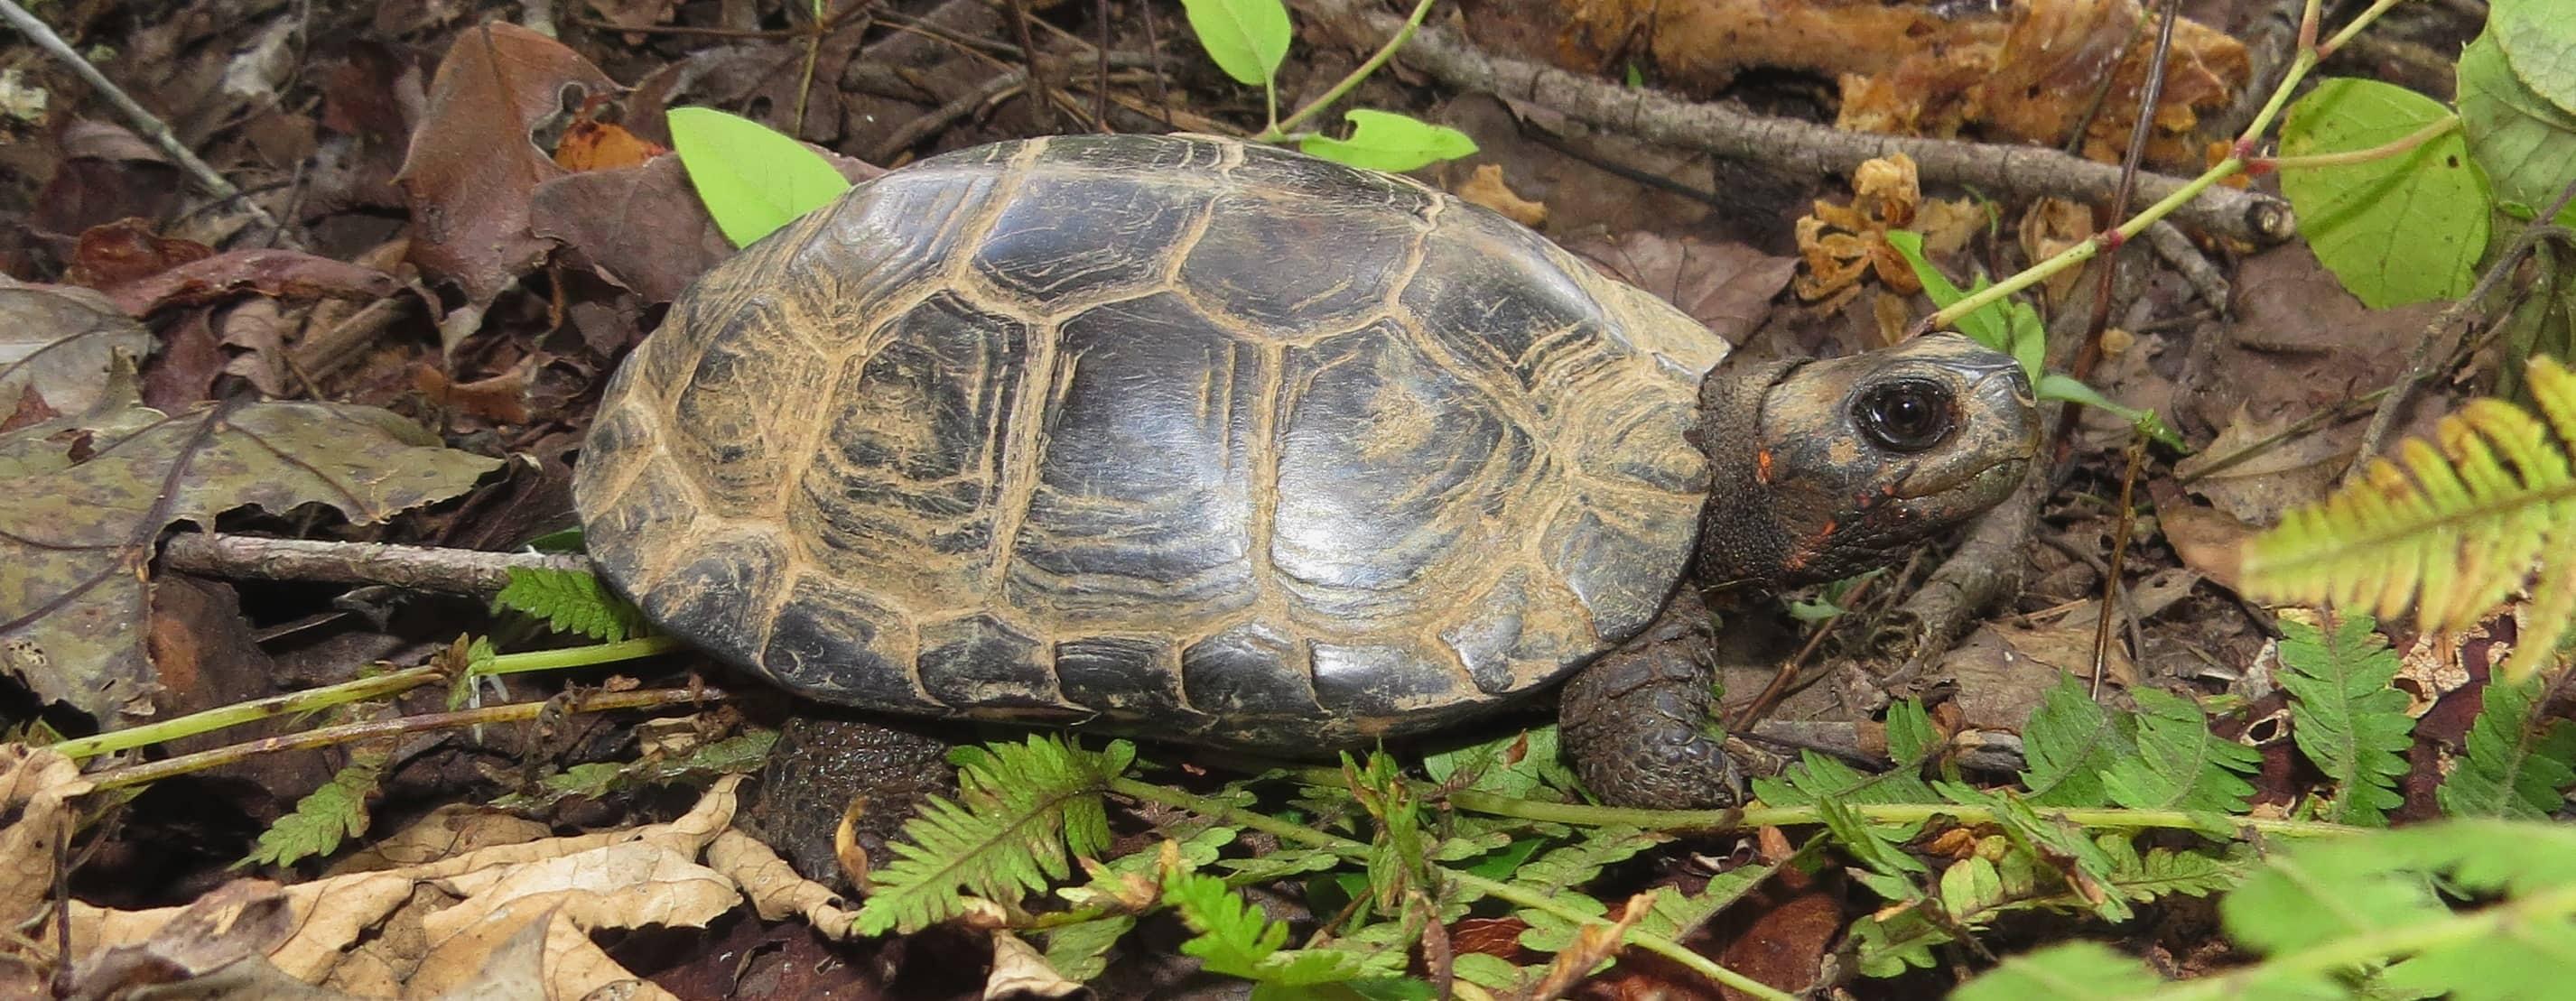 A bog turtle hatchling among brown leaf litter and green plant leaves like ferns.